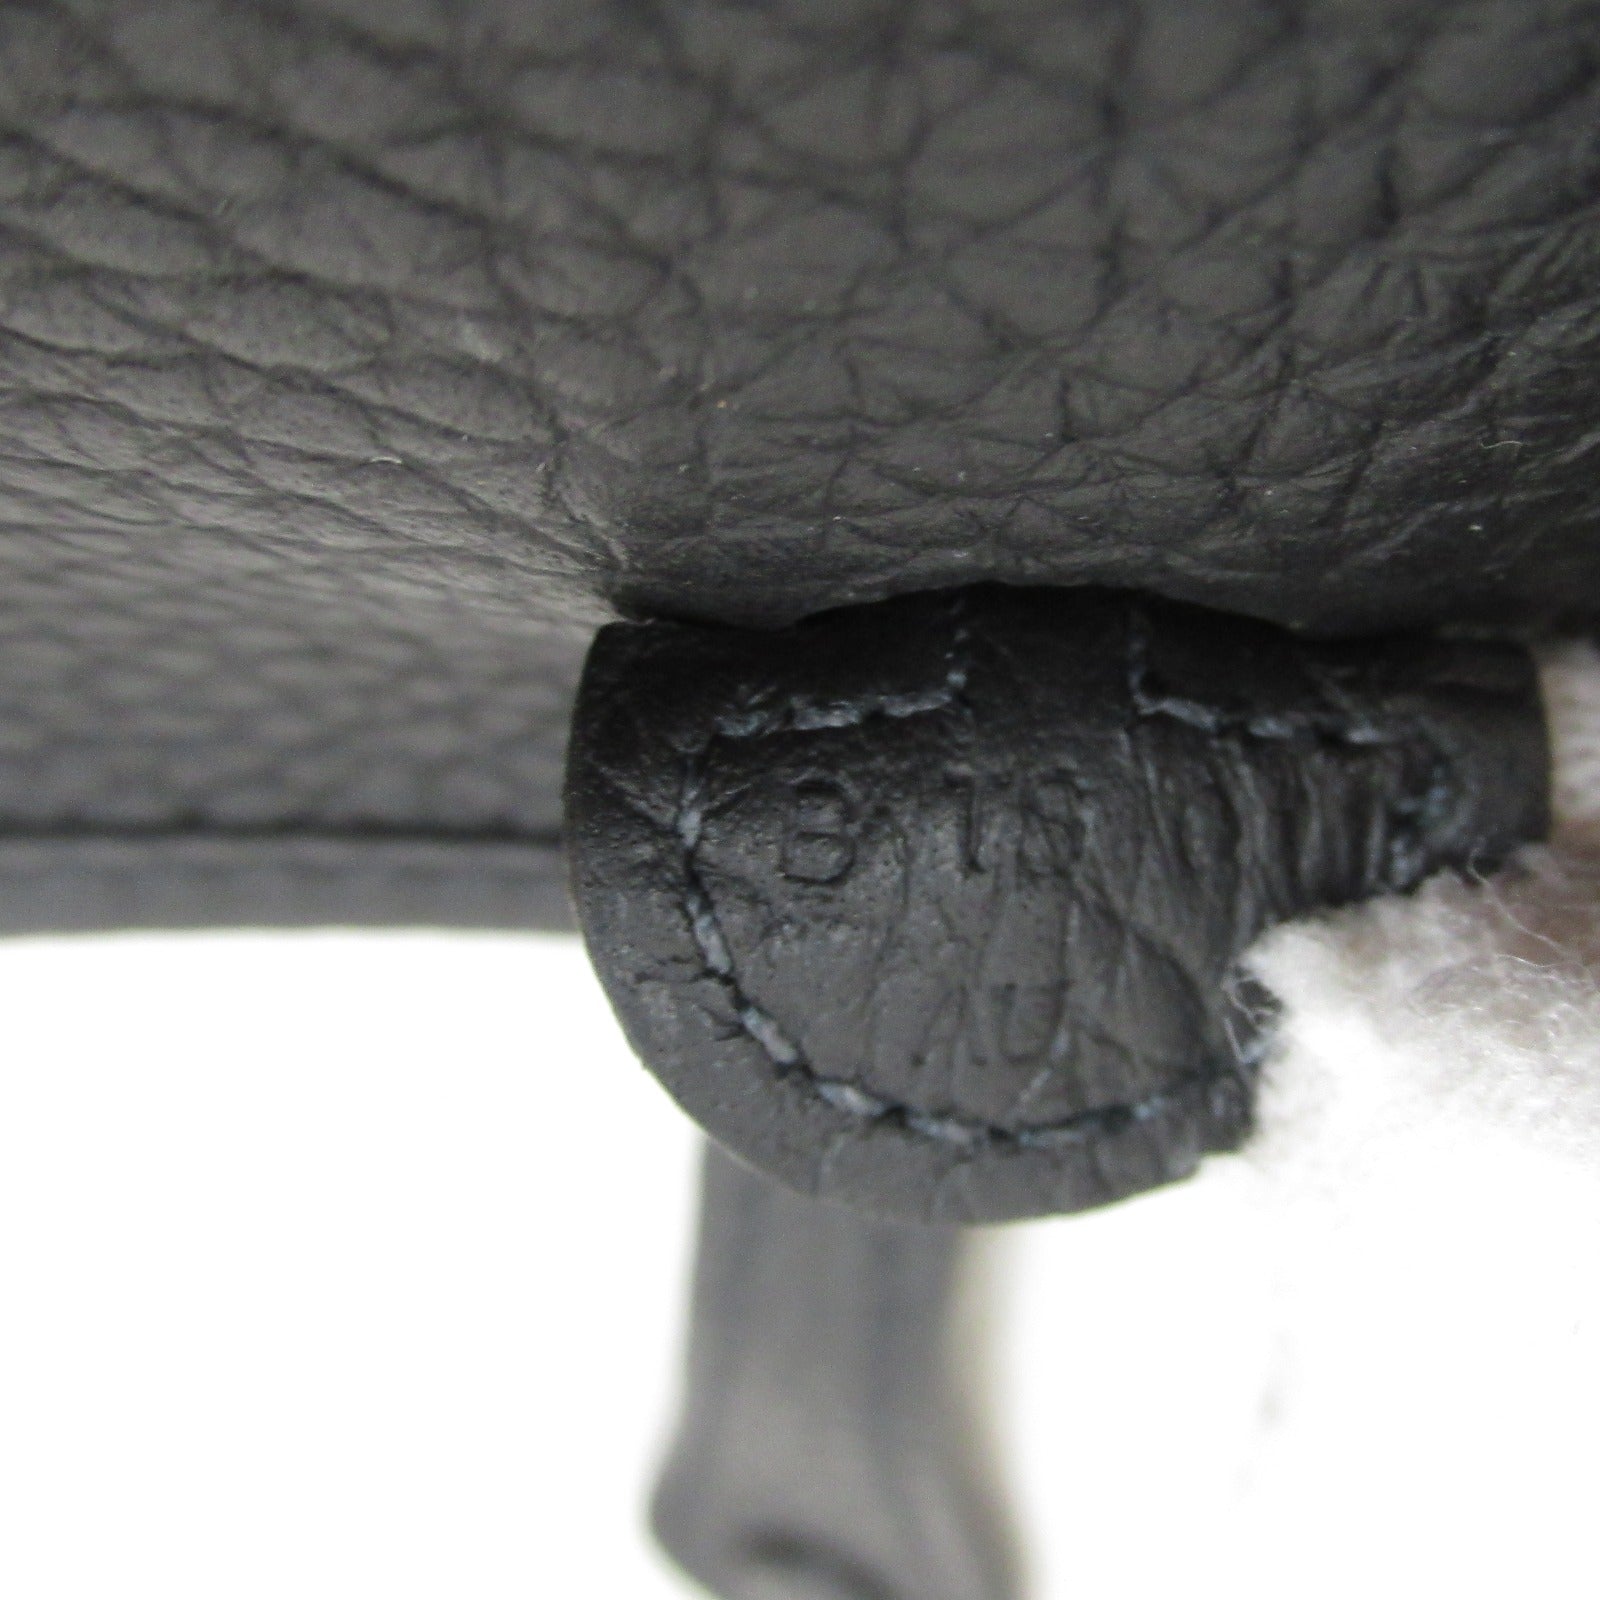 Hermes Everly Amazon TPM Black Shoulder Bag Shoulder Bag Leather  Claims  Black 069426CC